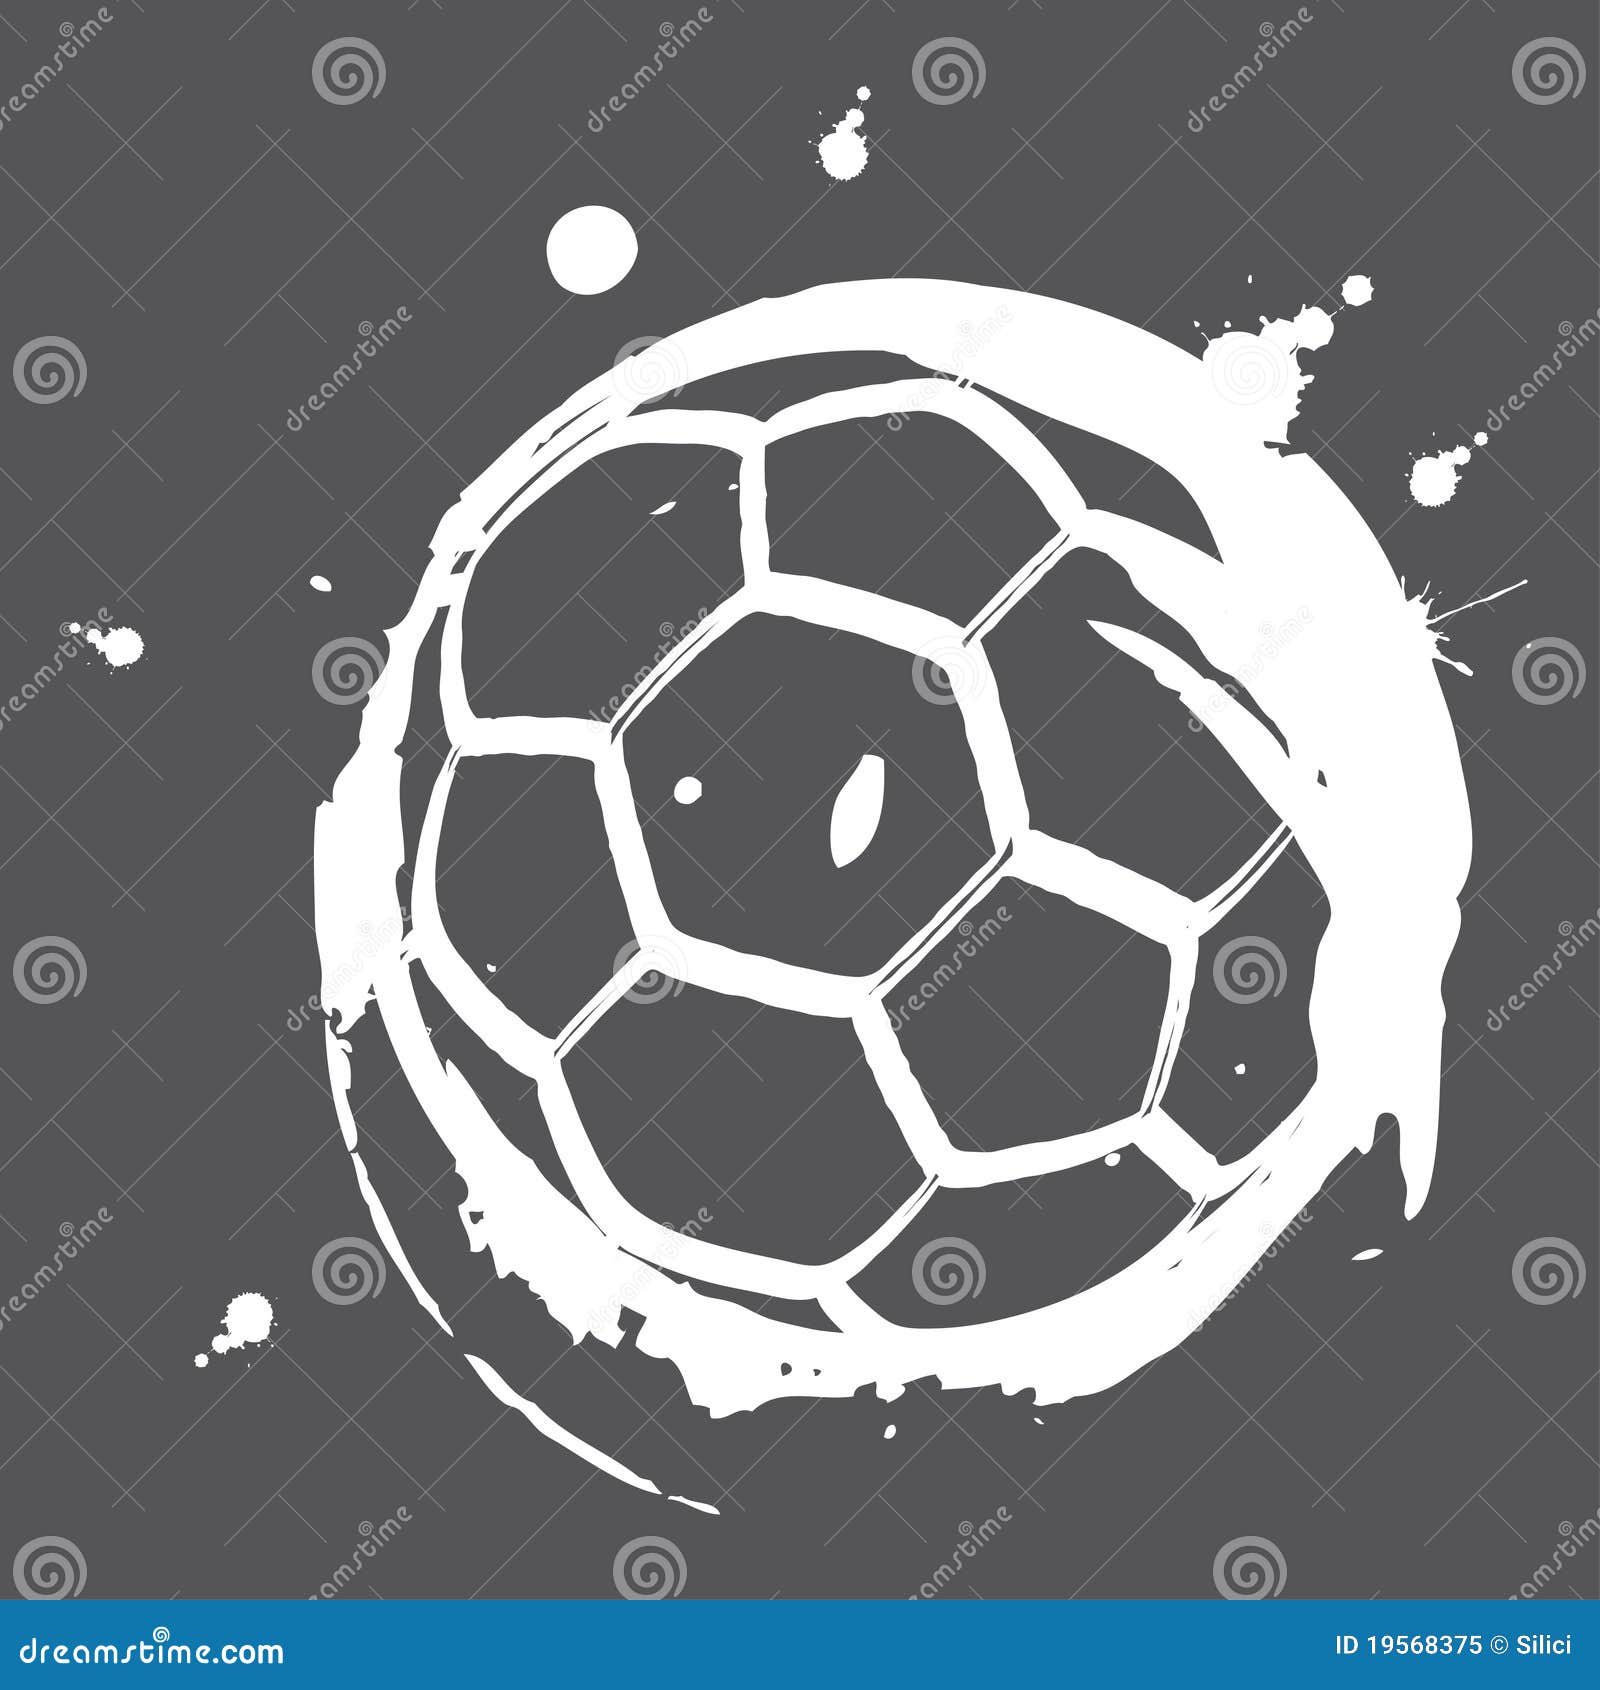 Soccer ball 5 stock vector. Illustration of soccer, black - 19568375